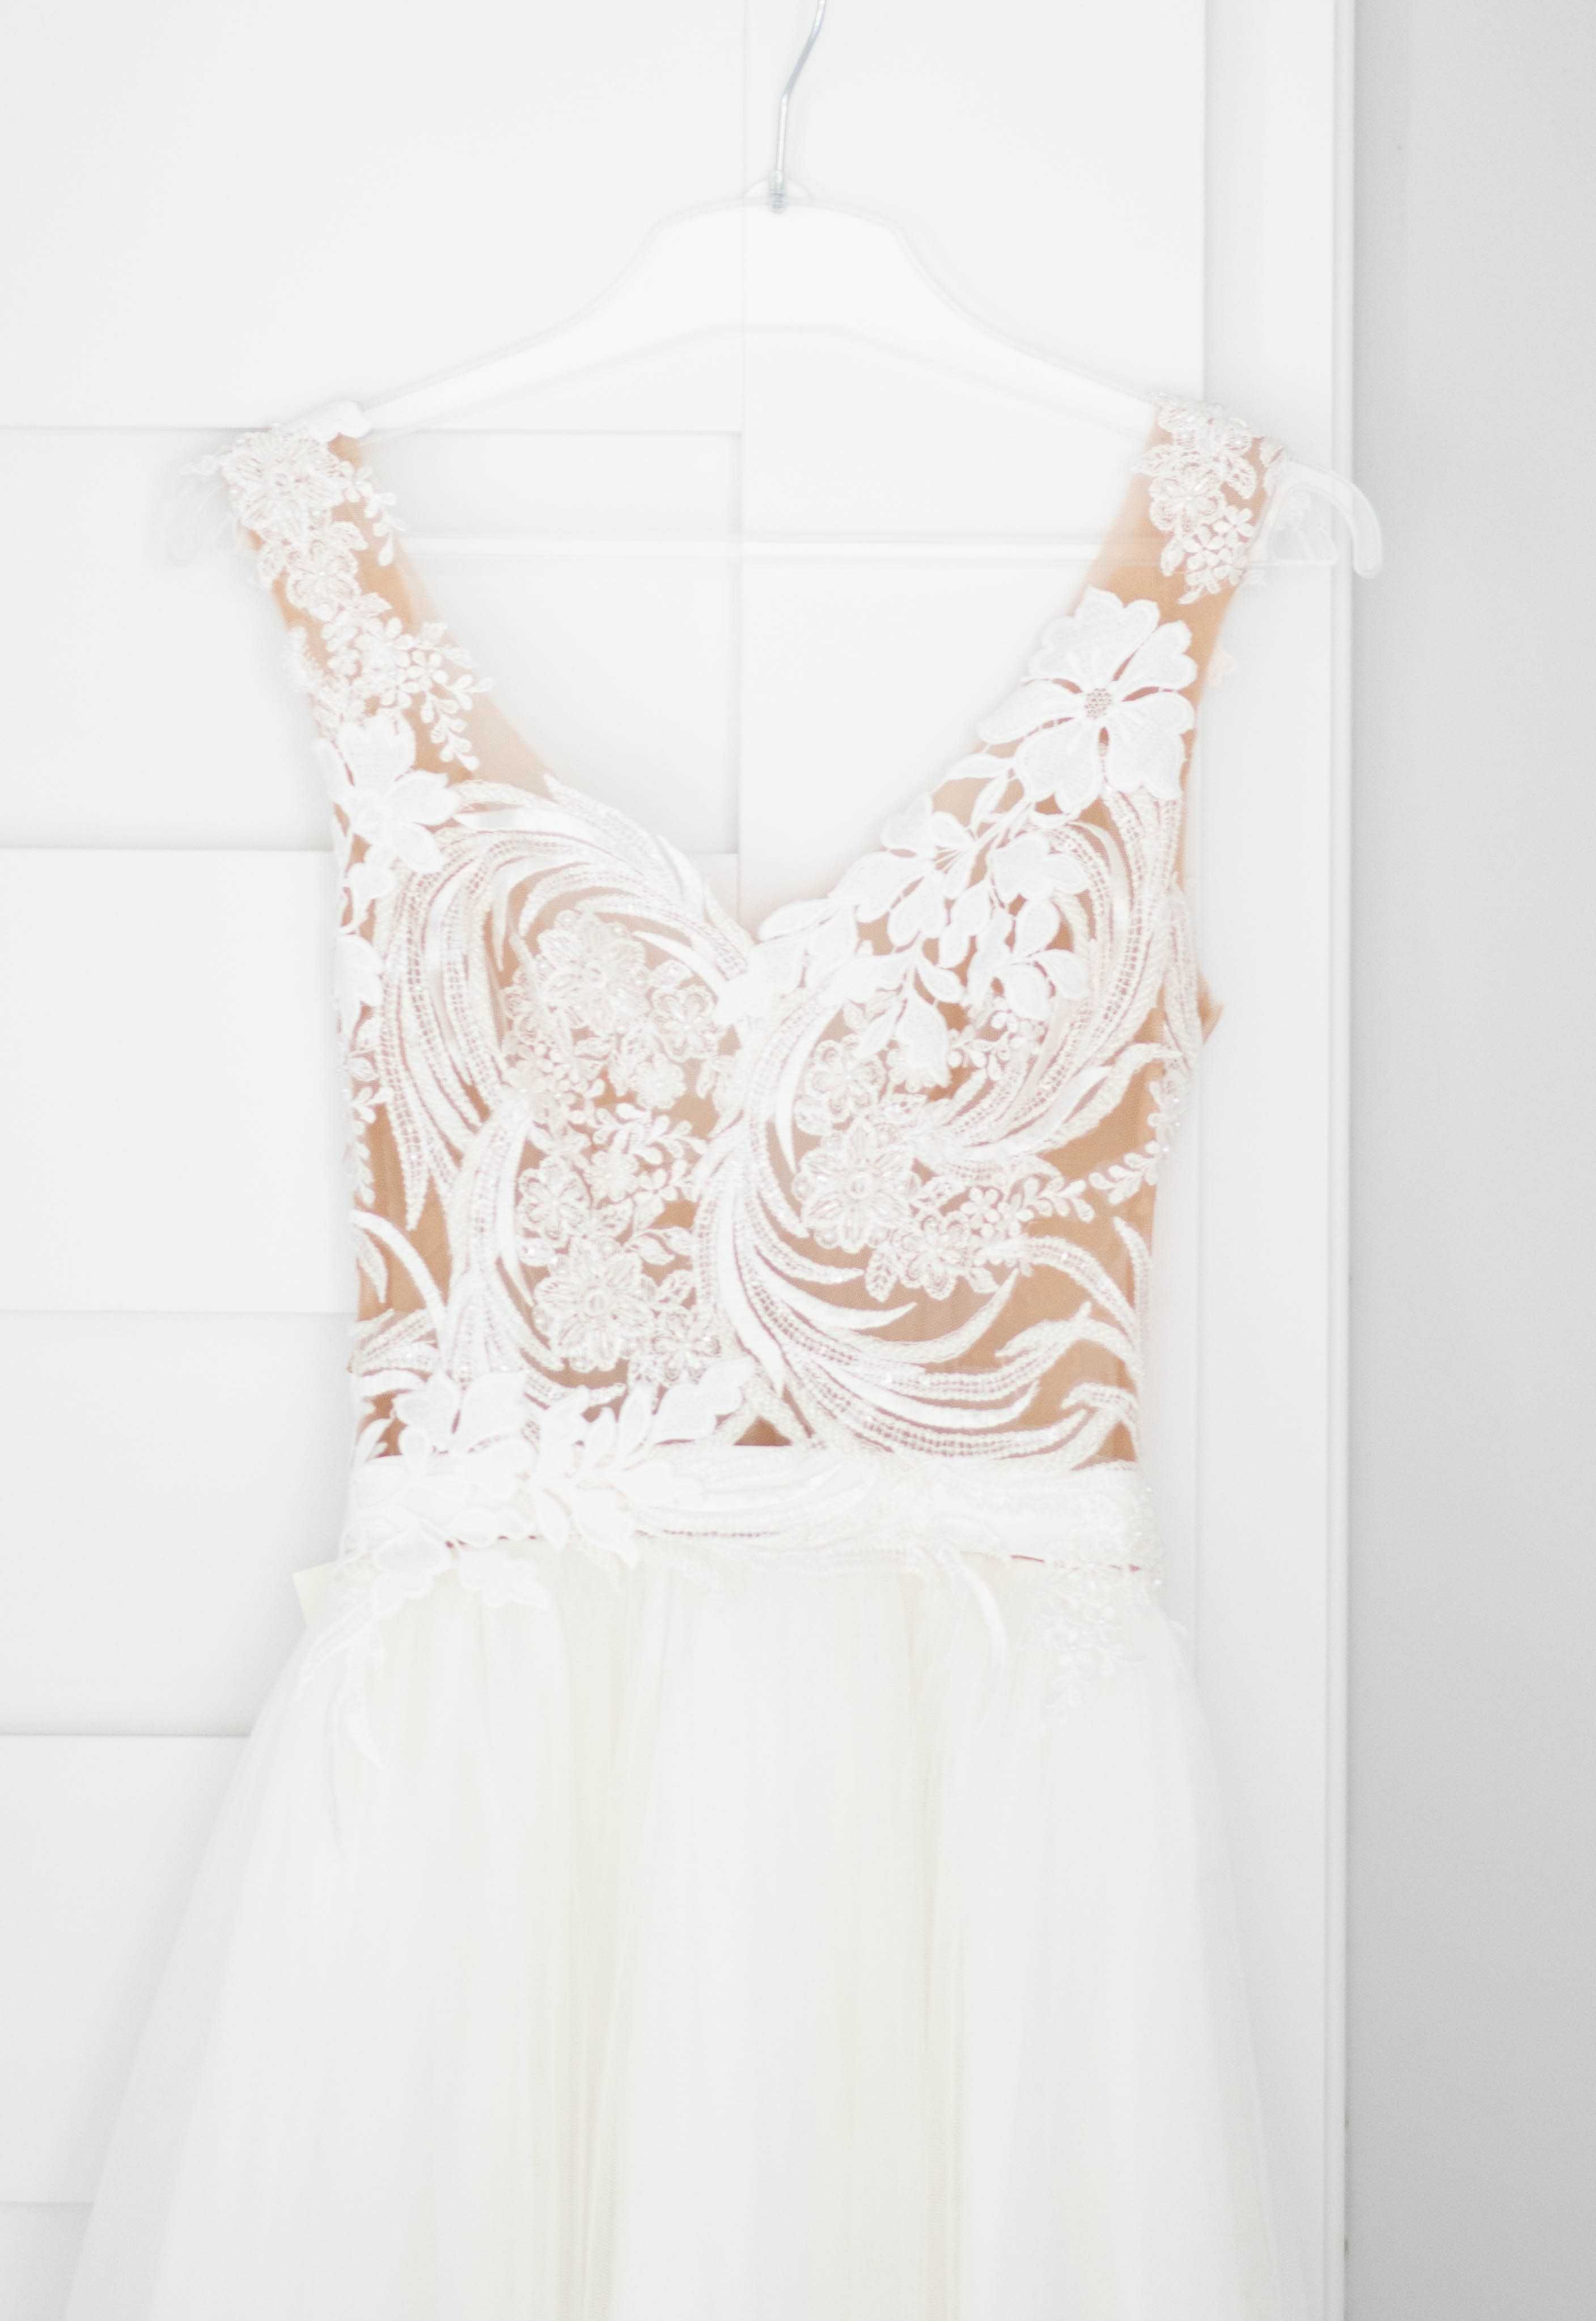 Nowa przepiękna suknia ślubna Impresja Alcante